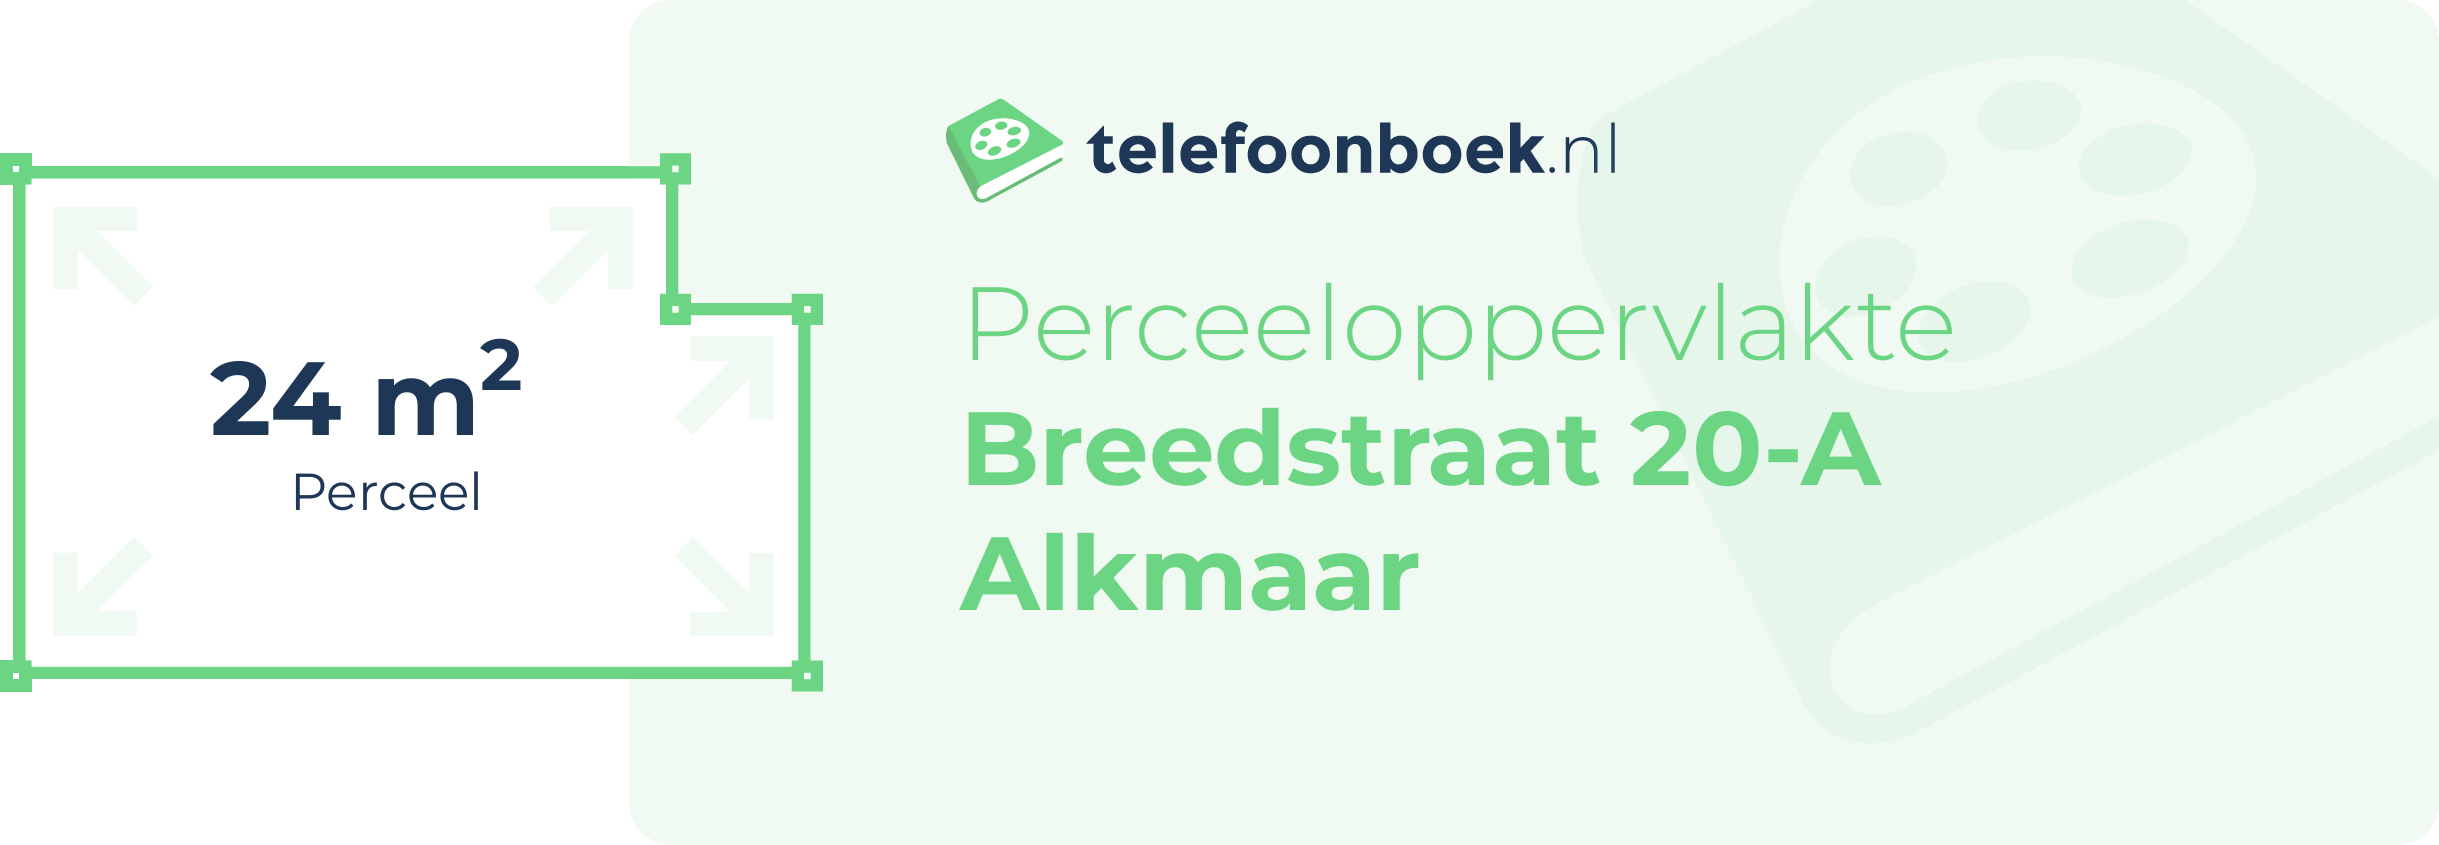 Perceeloppervlakte Breedstraat 20-A Alkmaar